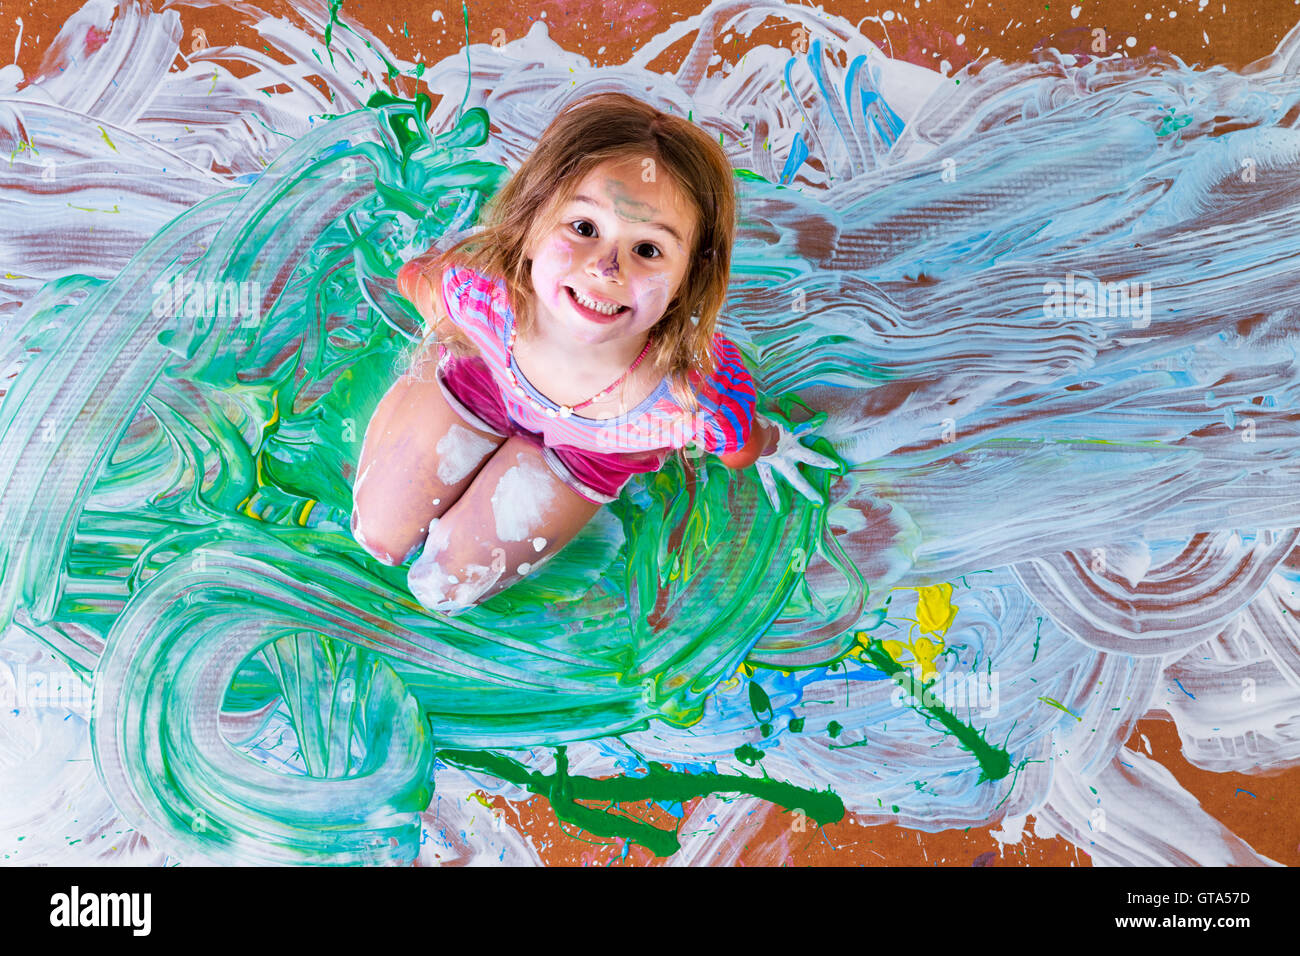 Kreative Farbe bespritzt kleines Mädchen Spaß mit Farben im Zentrum ihrer künstlerischen Moderne Malerei grinsend kniend Stockfoto